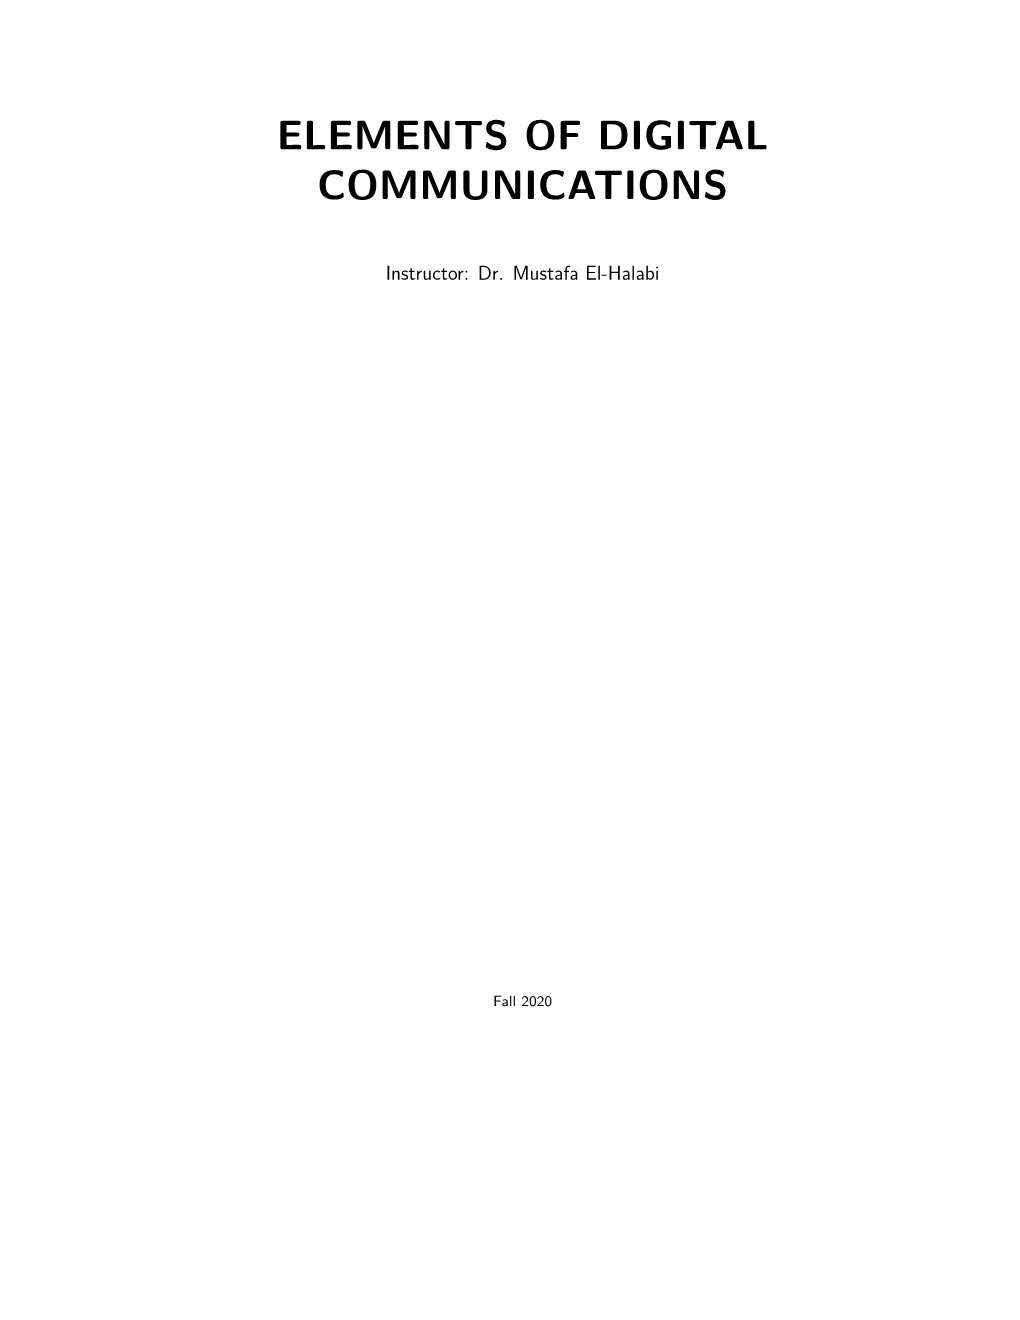 Elements of Digital Communications